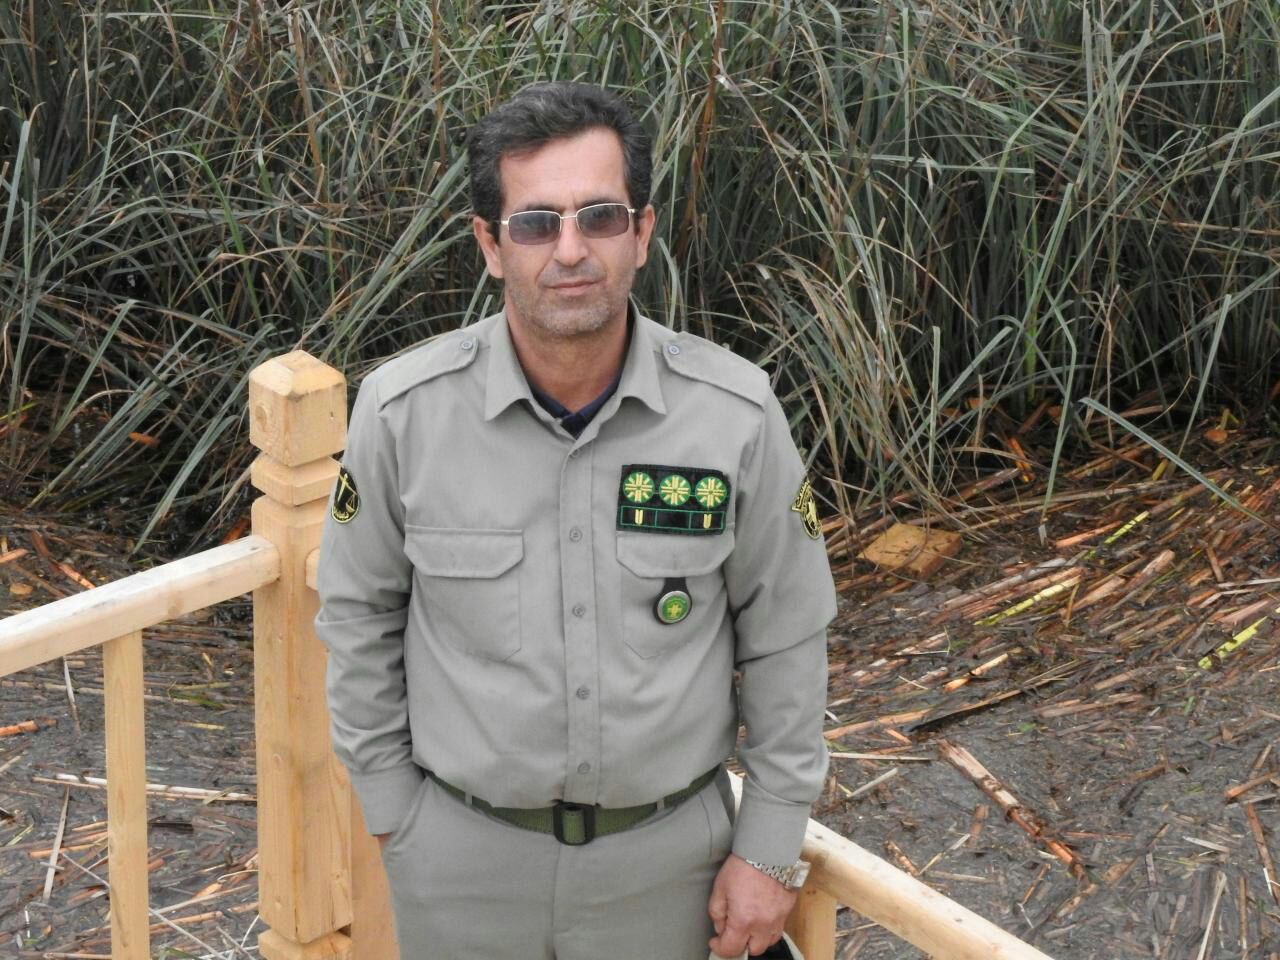 فرمانده پاسگاه امیر کلایه لاهیجان قهرمان کشوری تالاب شد.